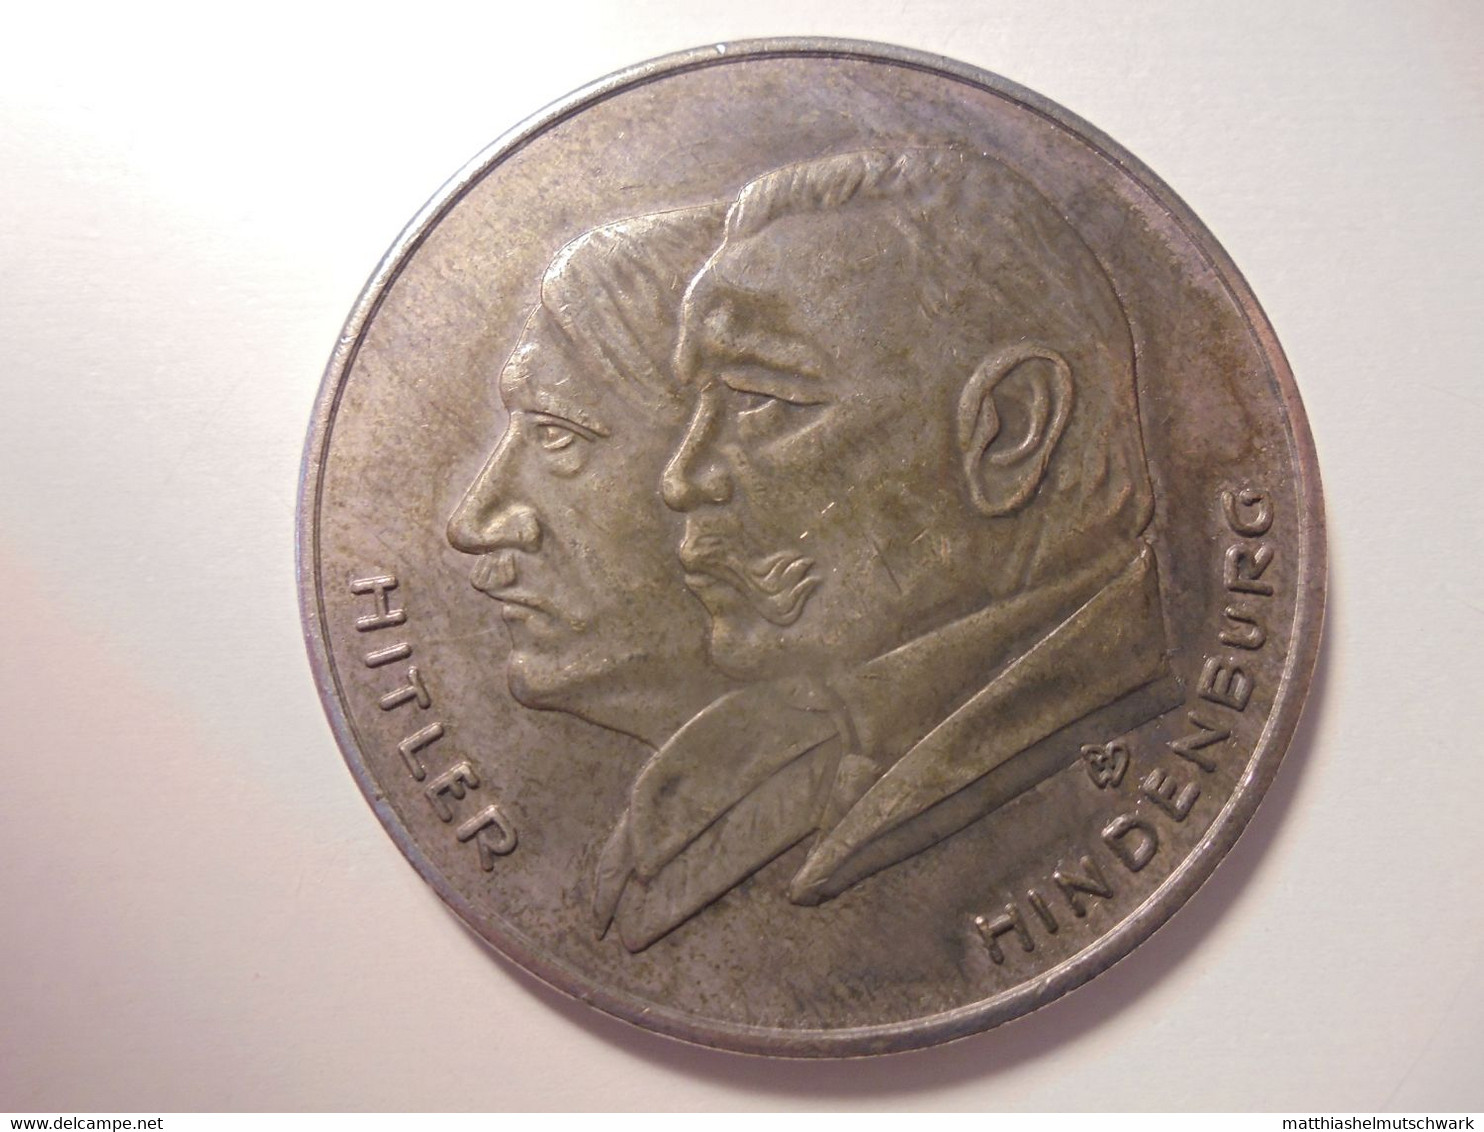 Medaille Auf „Deutschlands Erhebung 1933“ - Sehr Schöne Portraits Von Hitler Und Hindenburg Graveur/Designer: RW Medaill - Germany